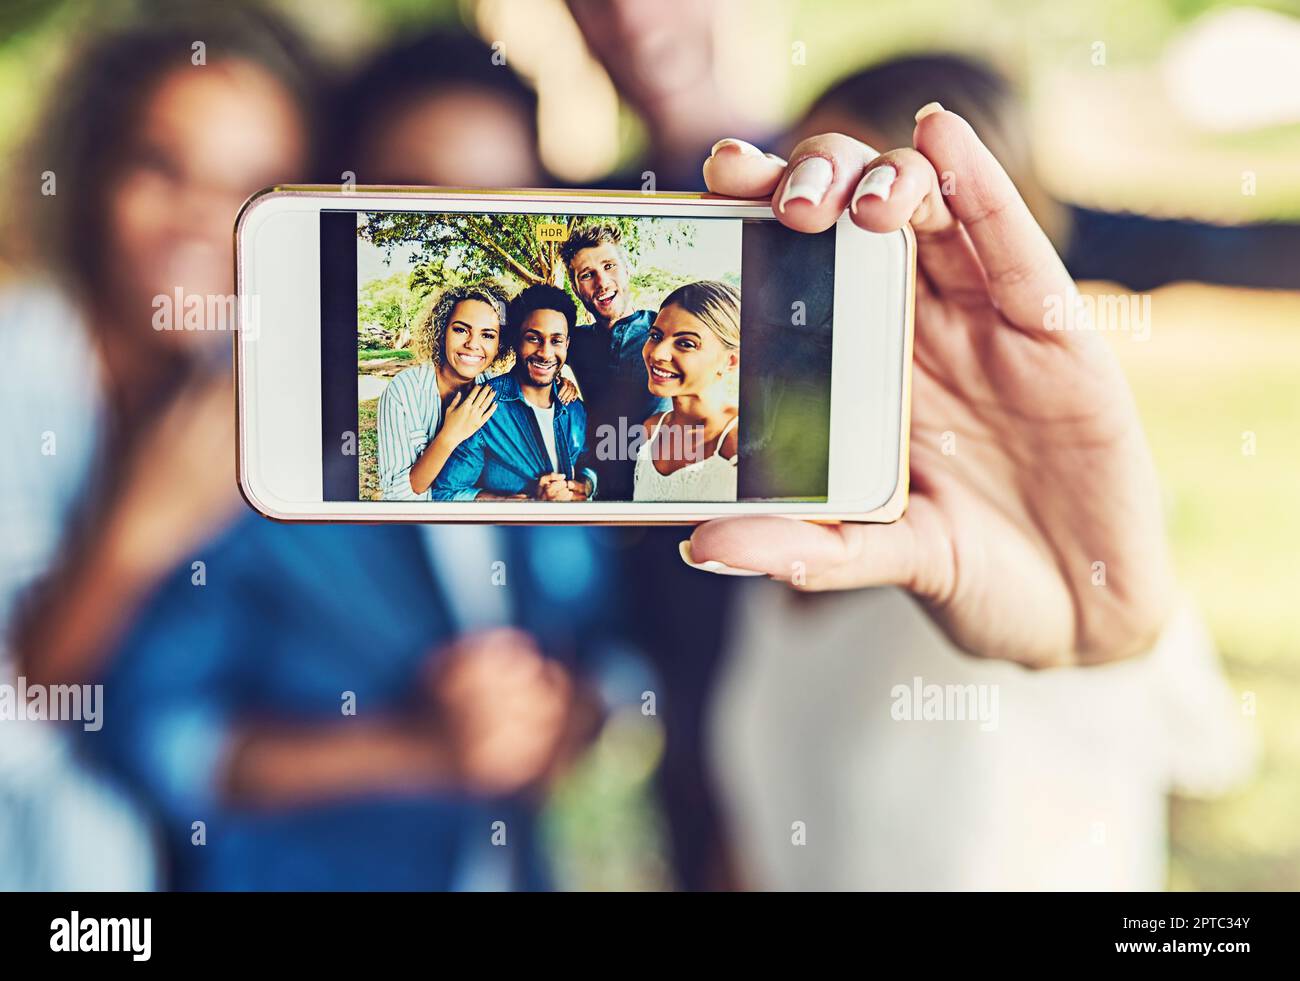 La memoria non si dissolve mai. due giovani coppie felici che prendono un selfie insieme all'aperto Foto Stock